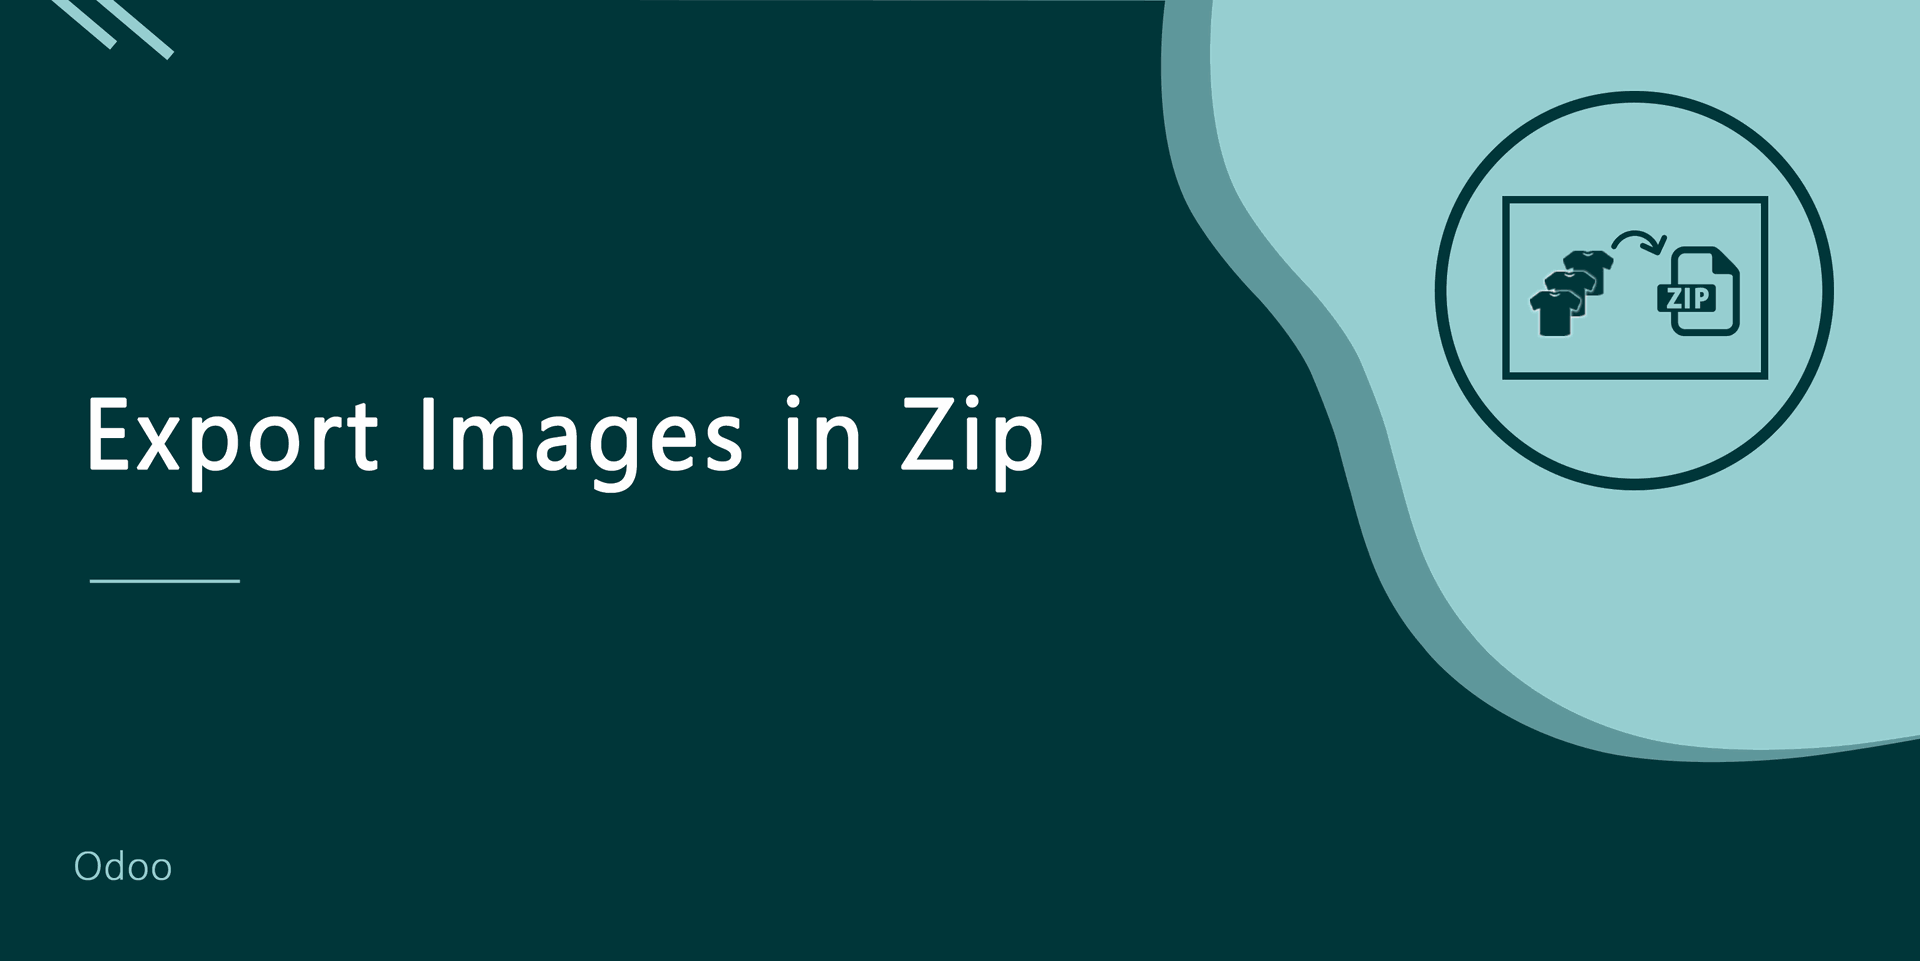 Export Images in zip